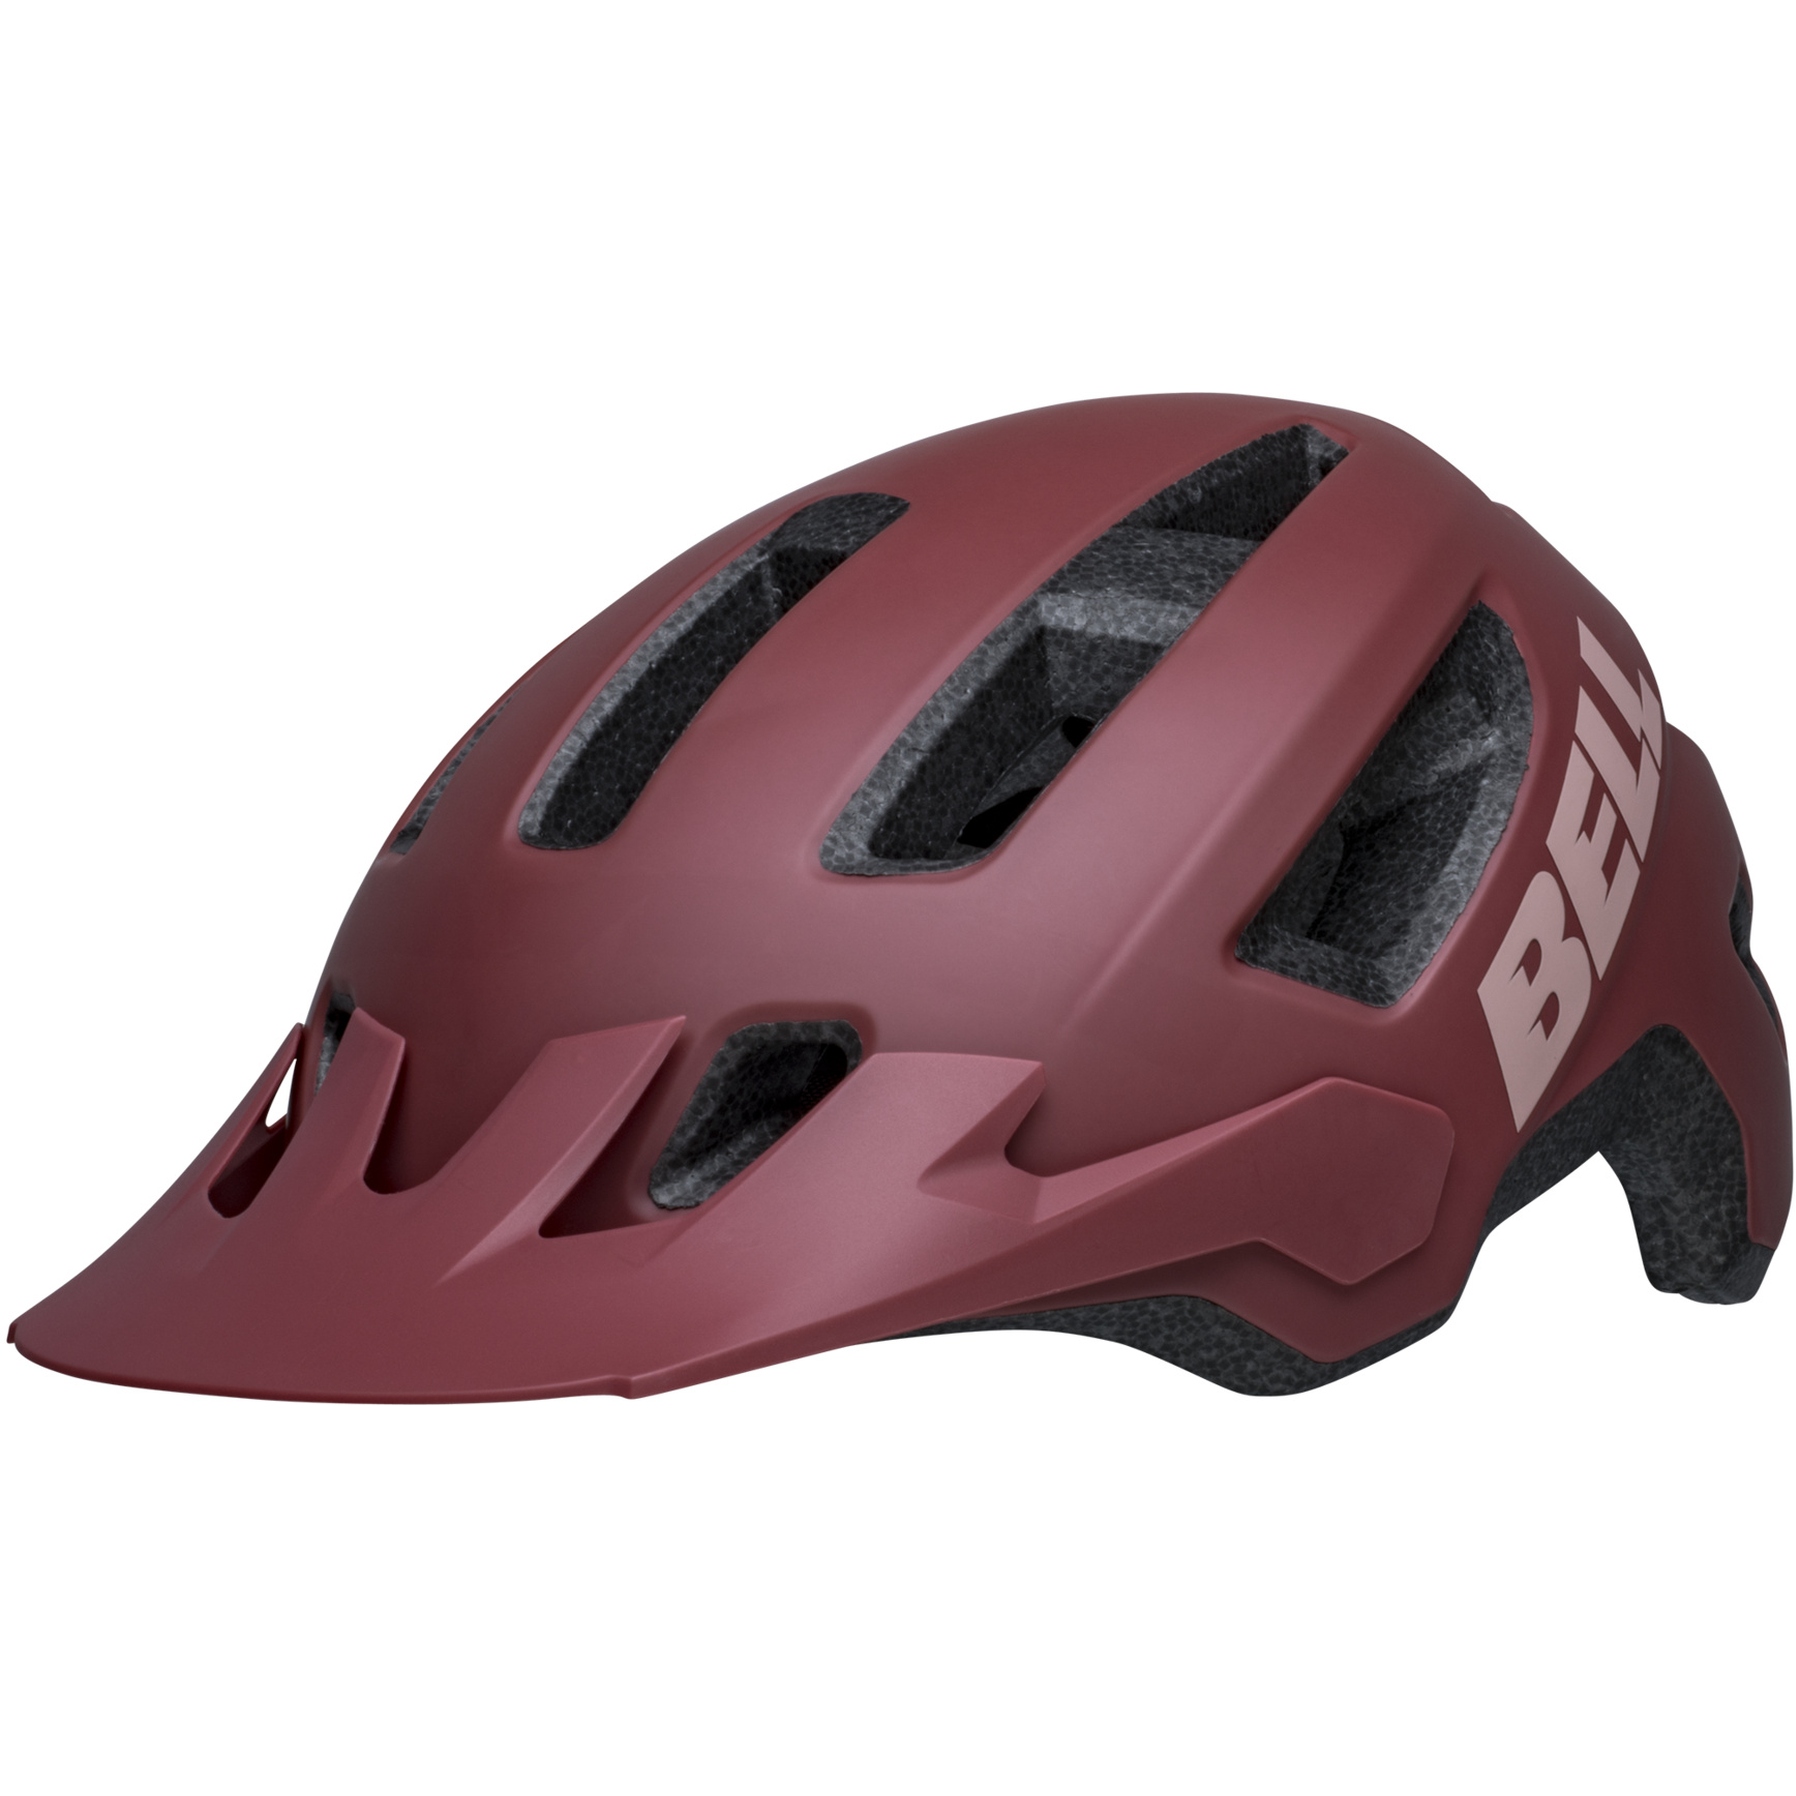 Produktbild von Bell Nomad 2 Mips Helm - matte pink